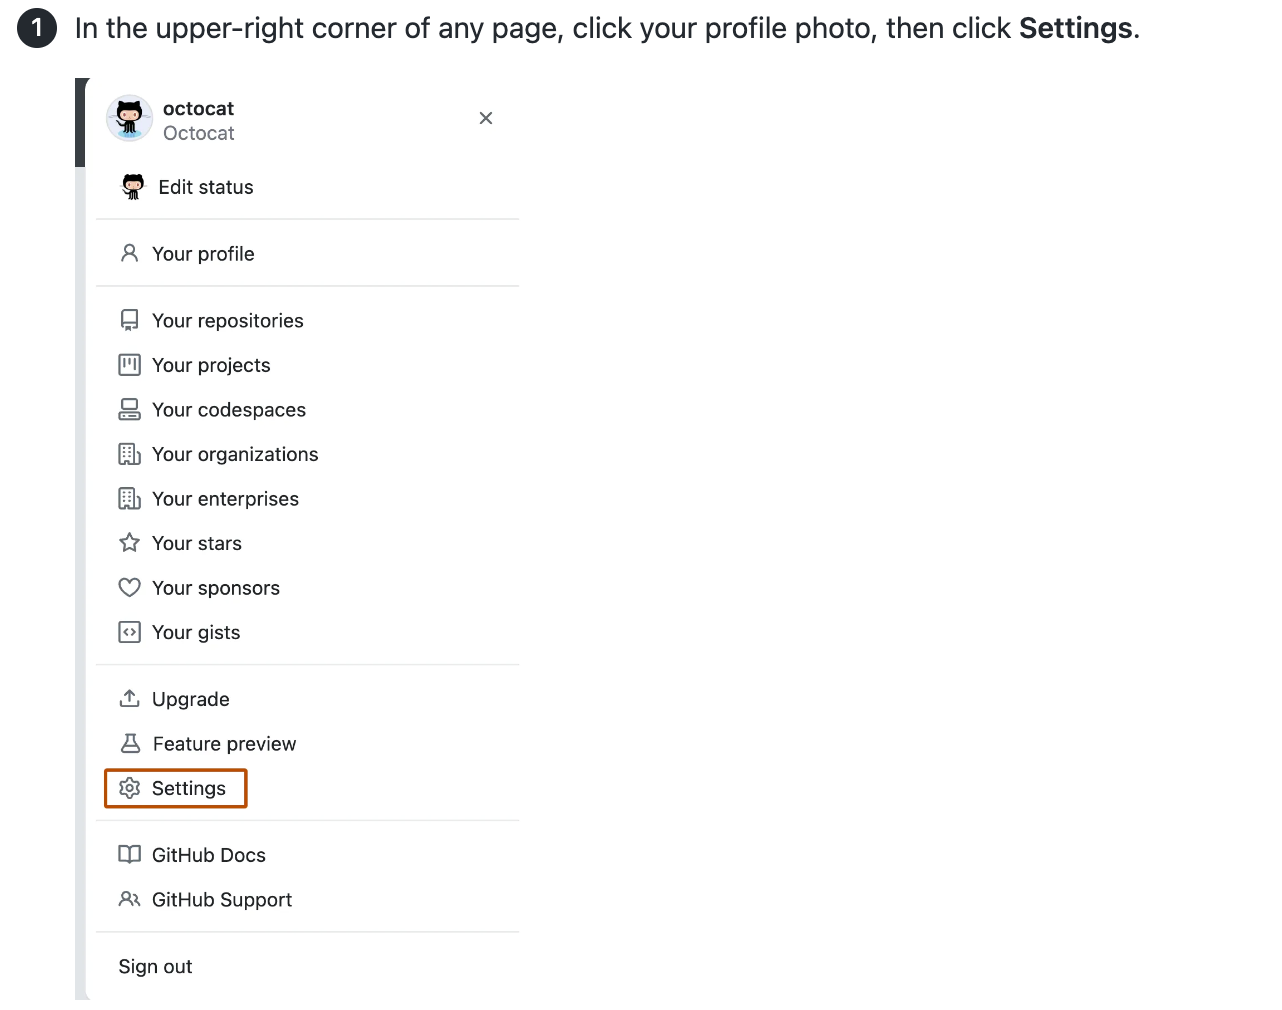 Снимок экрана: статья с инструкциями и снимок экрана пользовательского интерфейса для поиска элемента меню "Параметры" в меню учетной записи пользователя GitHub.